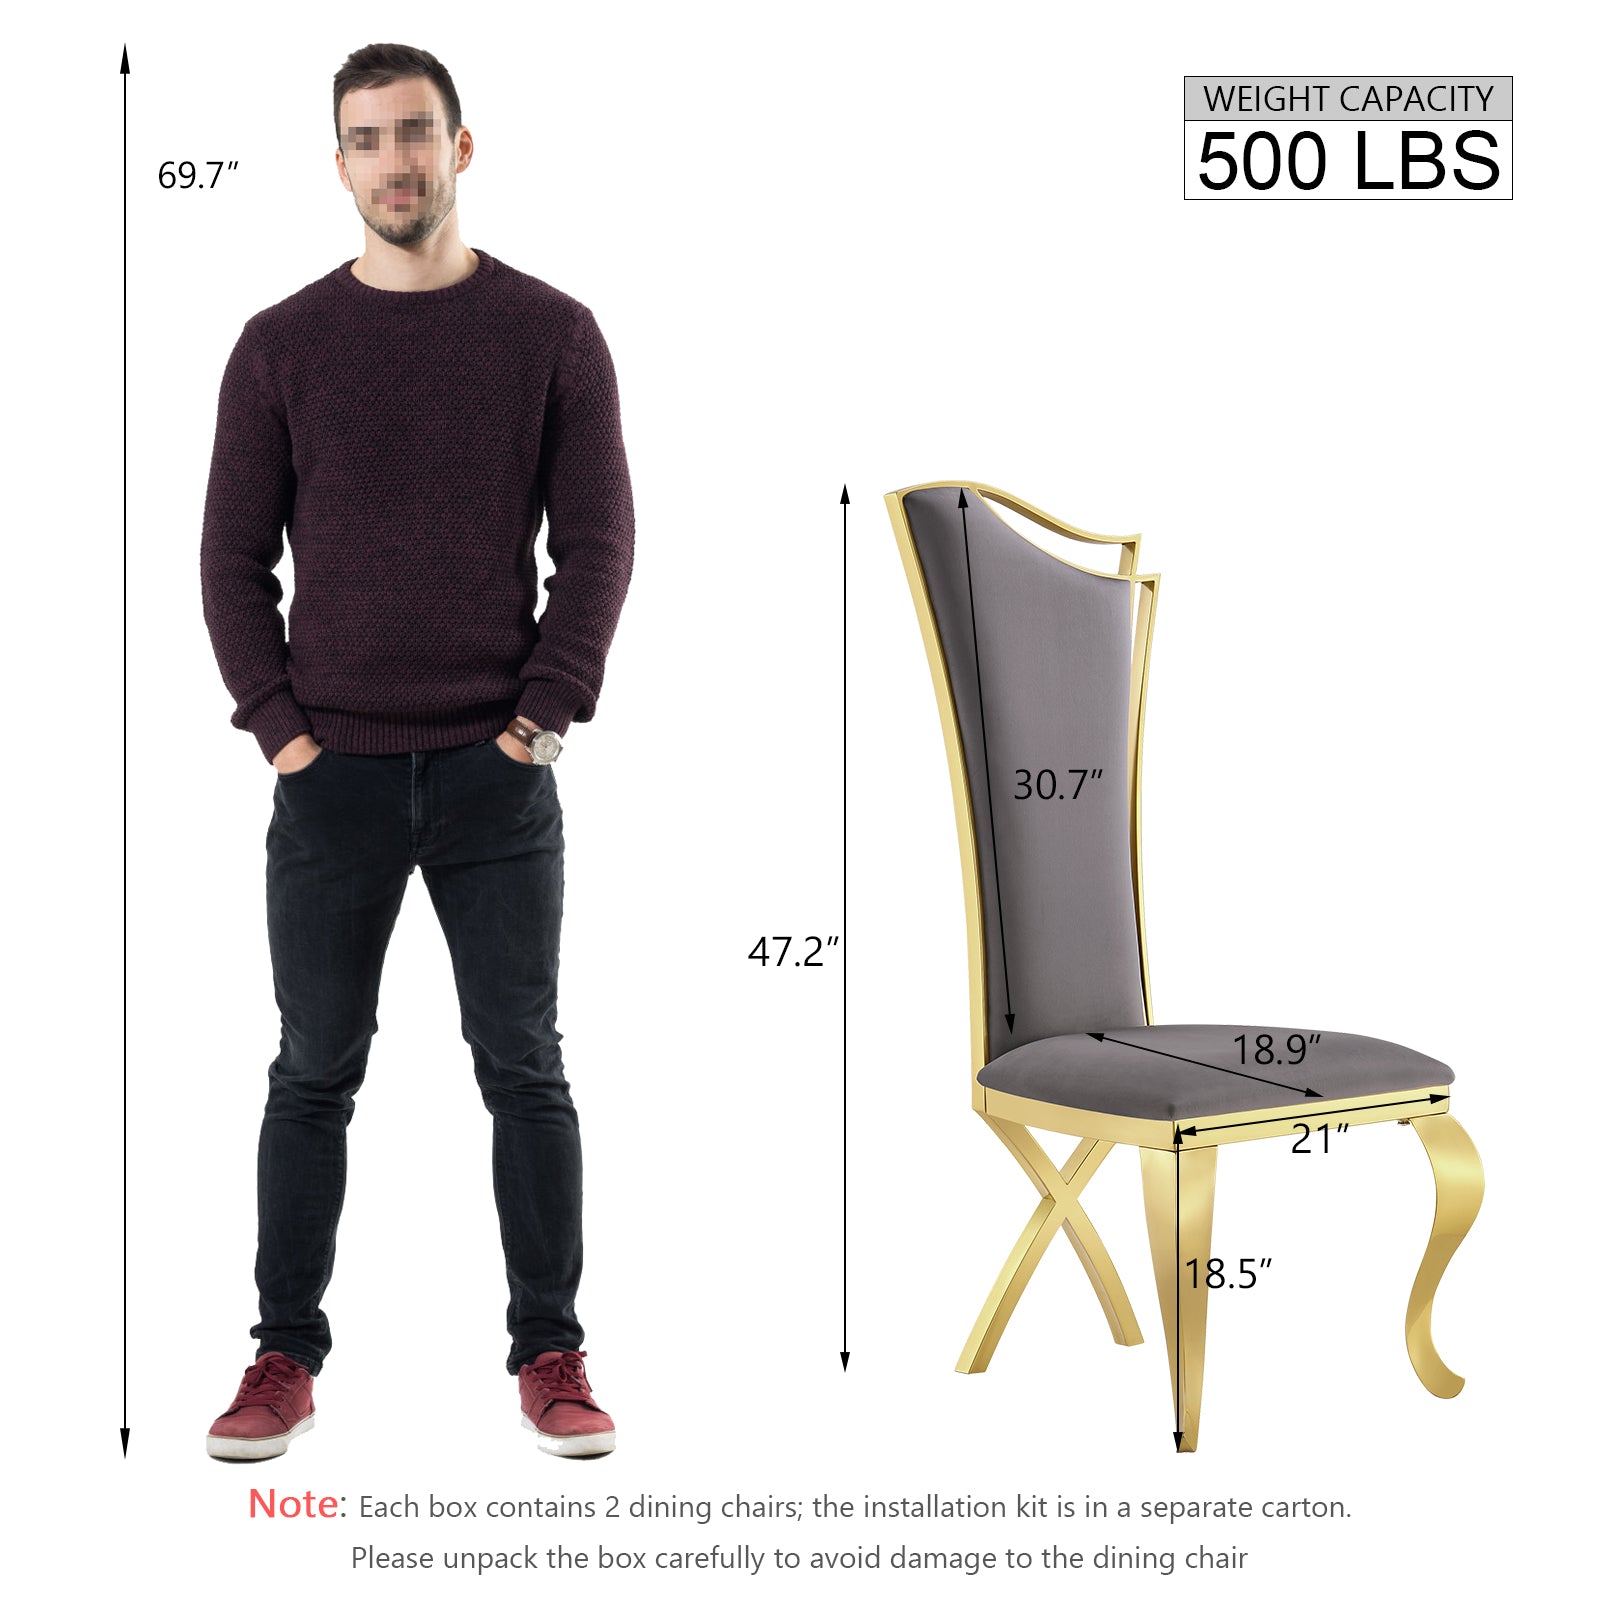 Gray Velvet Dining Chairs | Streamlined High backrest | Gold Metal Legs | C167